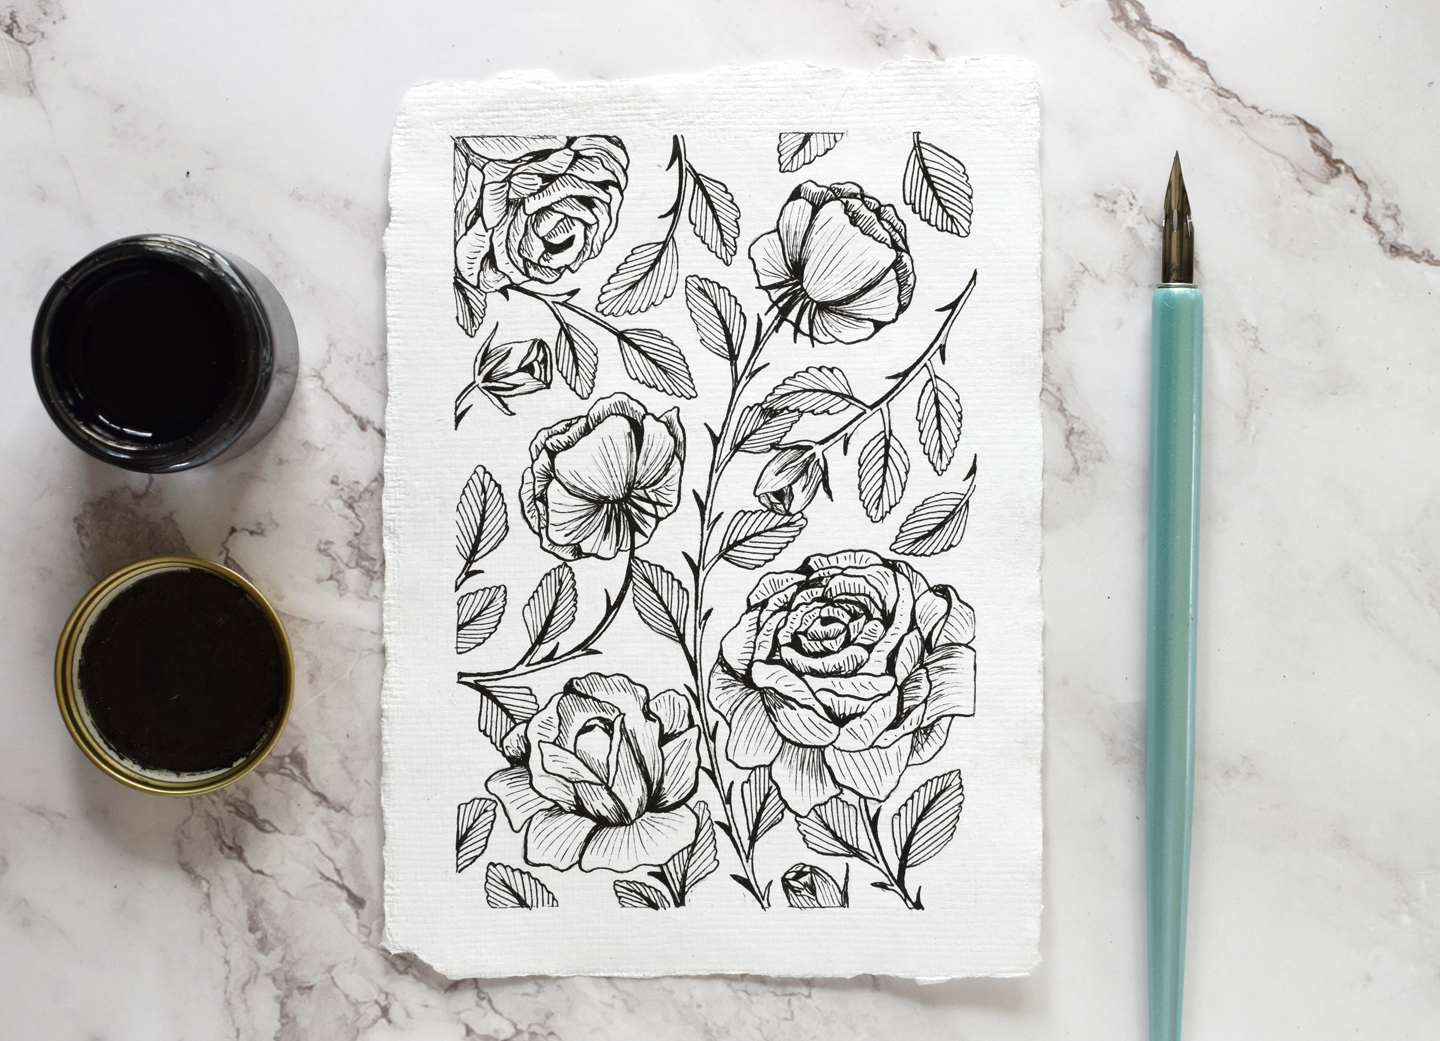 How to Make a Vintage Rose Illustration